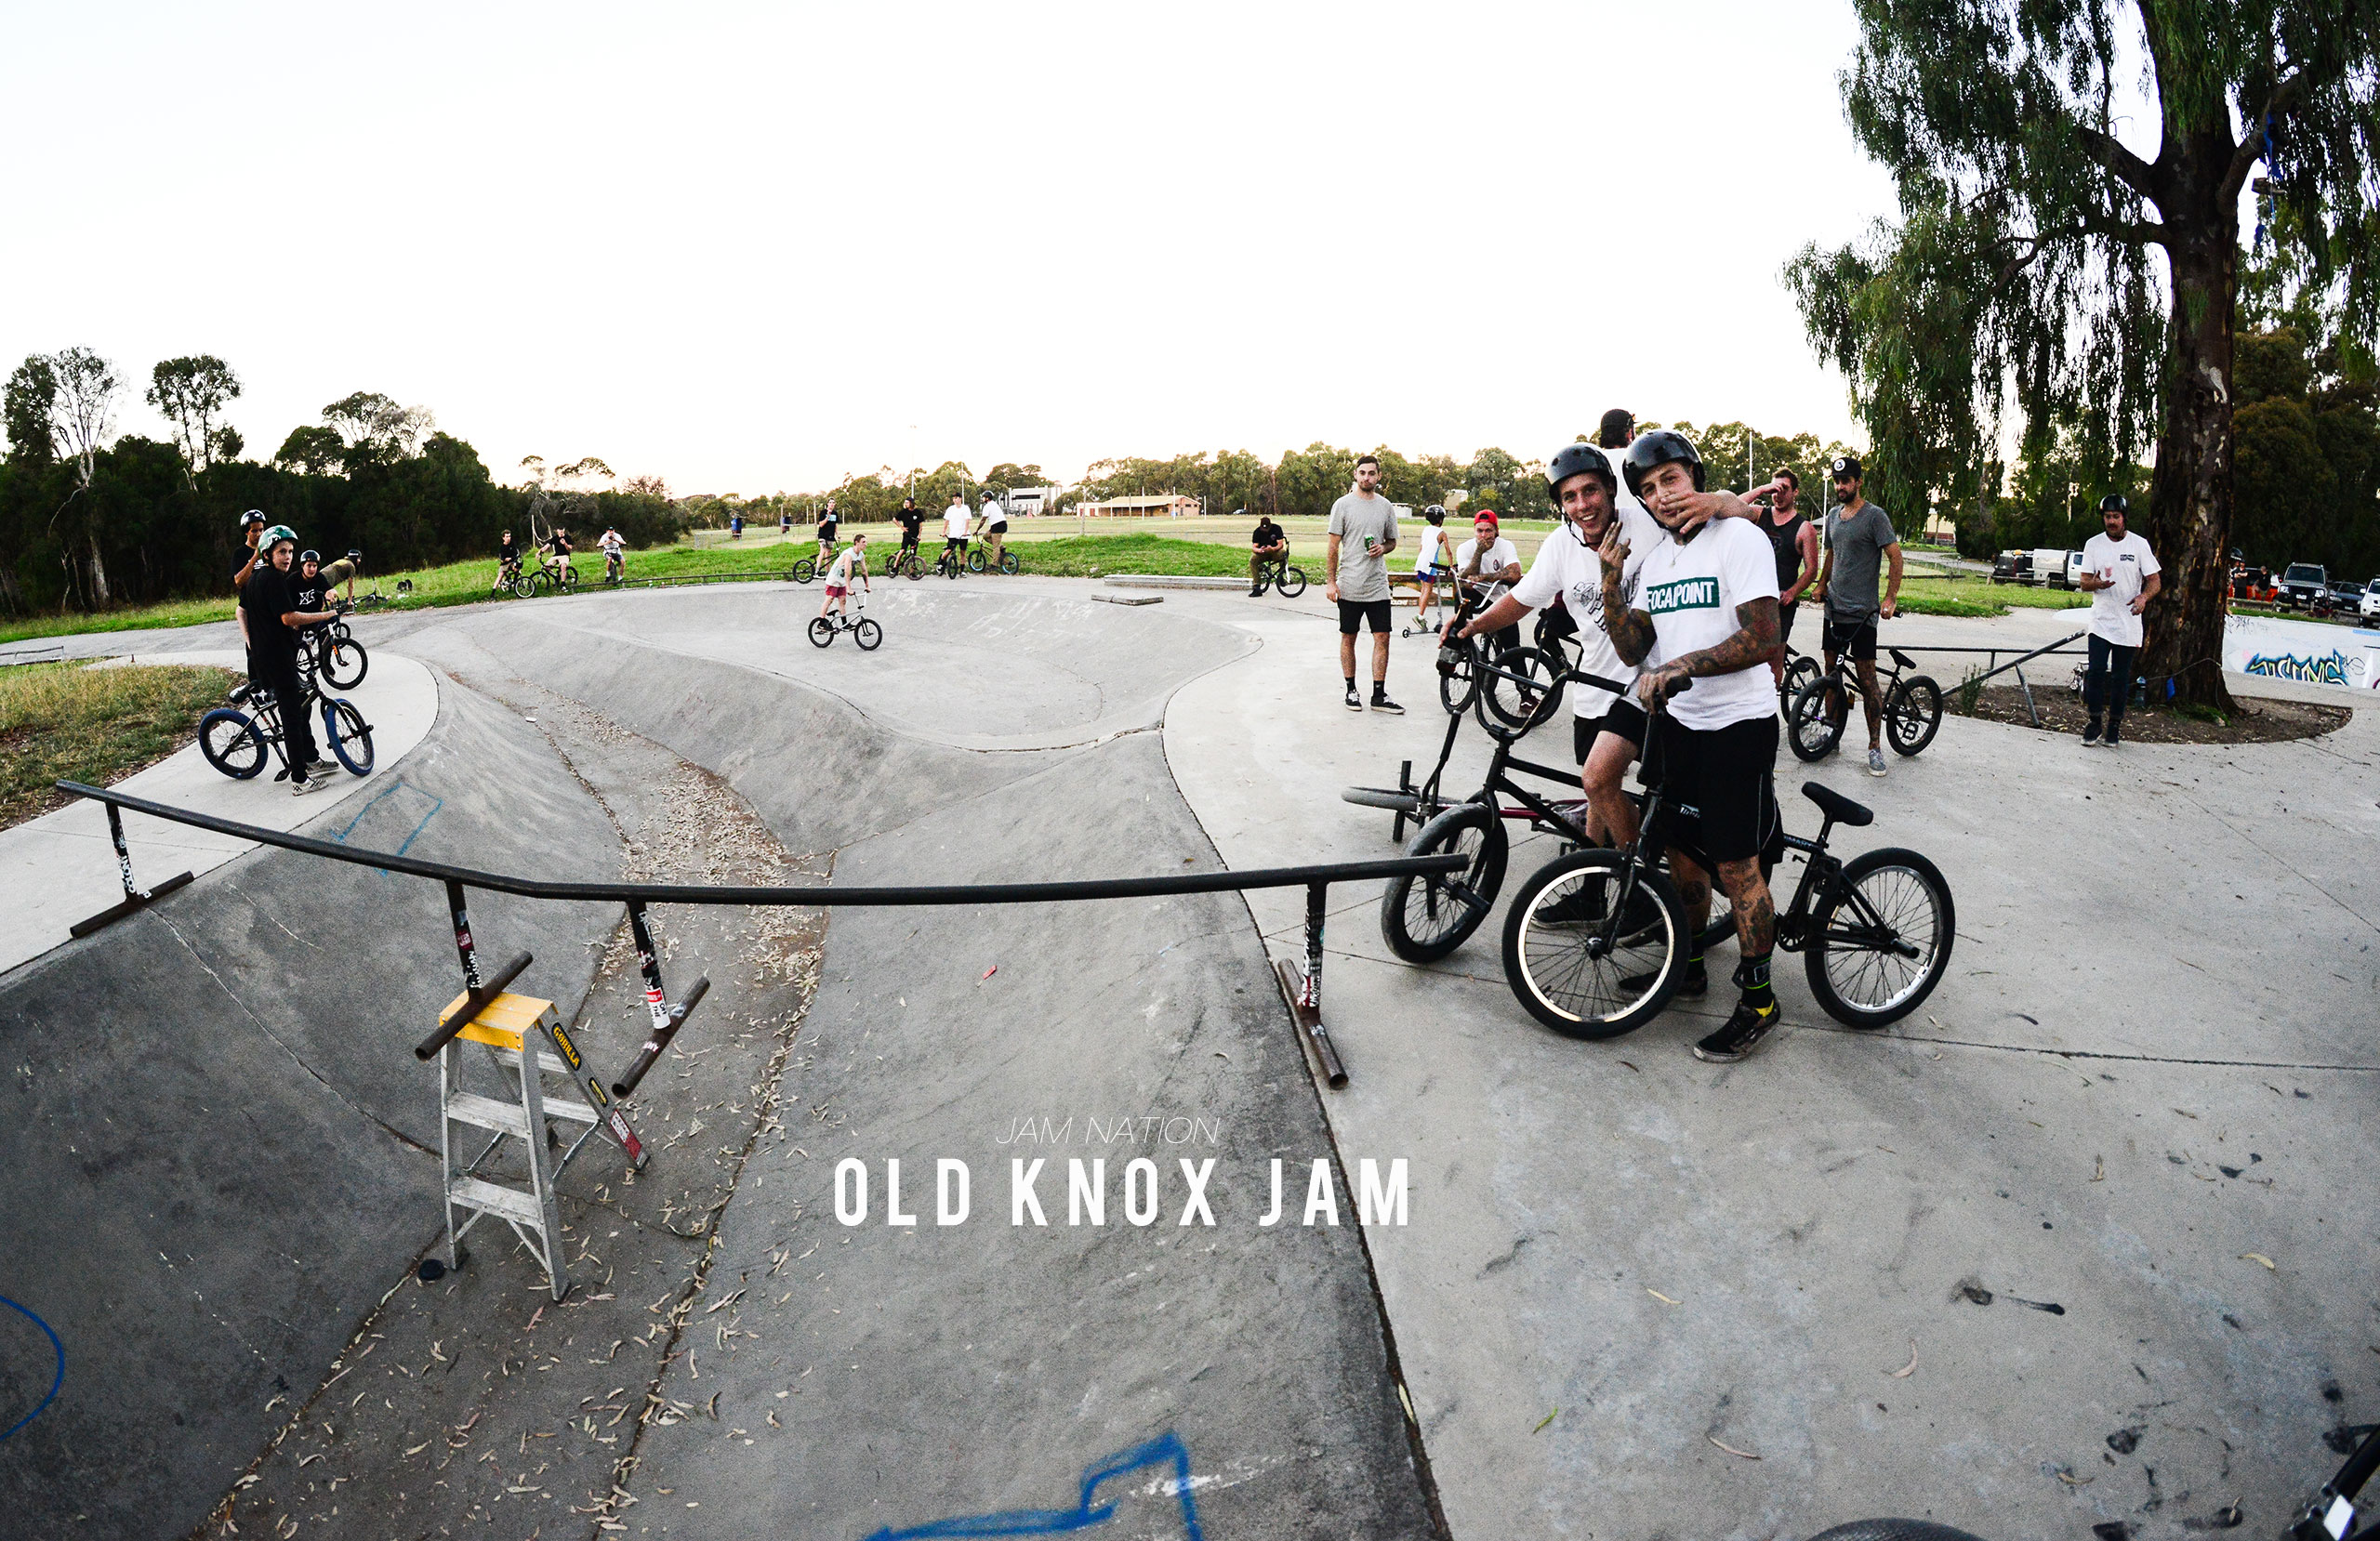 Jamnation – Old Knox Jam